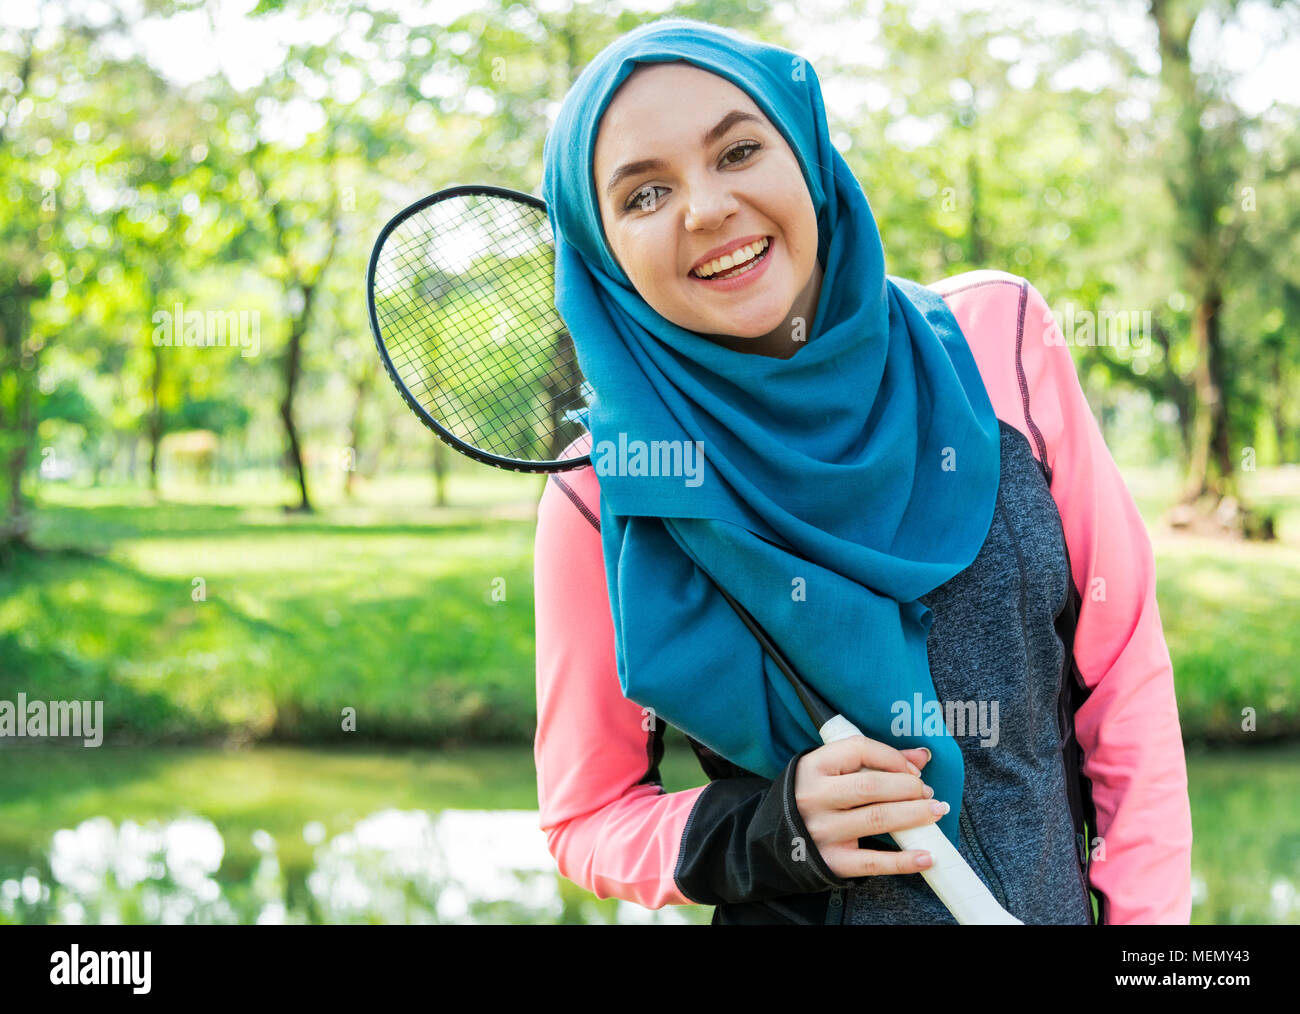 Freundliche moslemische Frau spielen Badminton Stockfoto